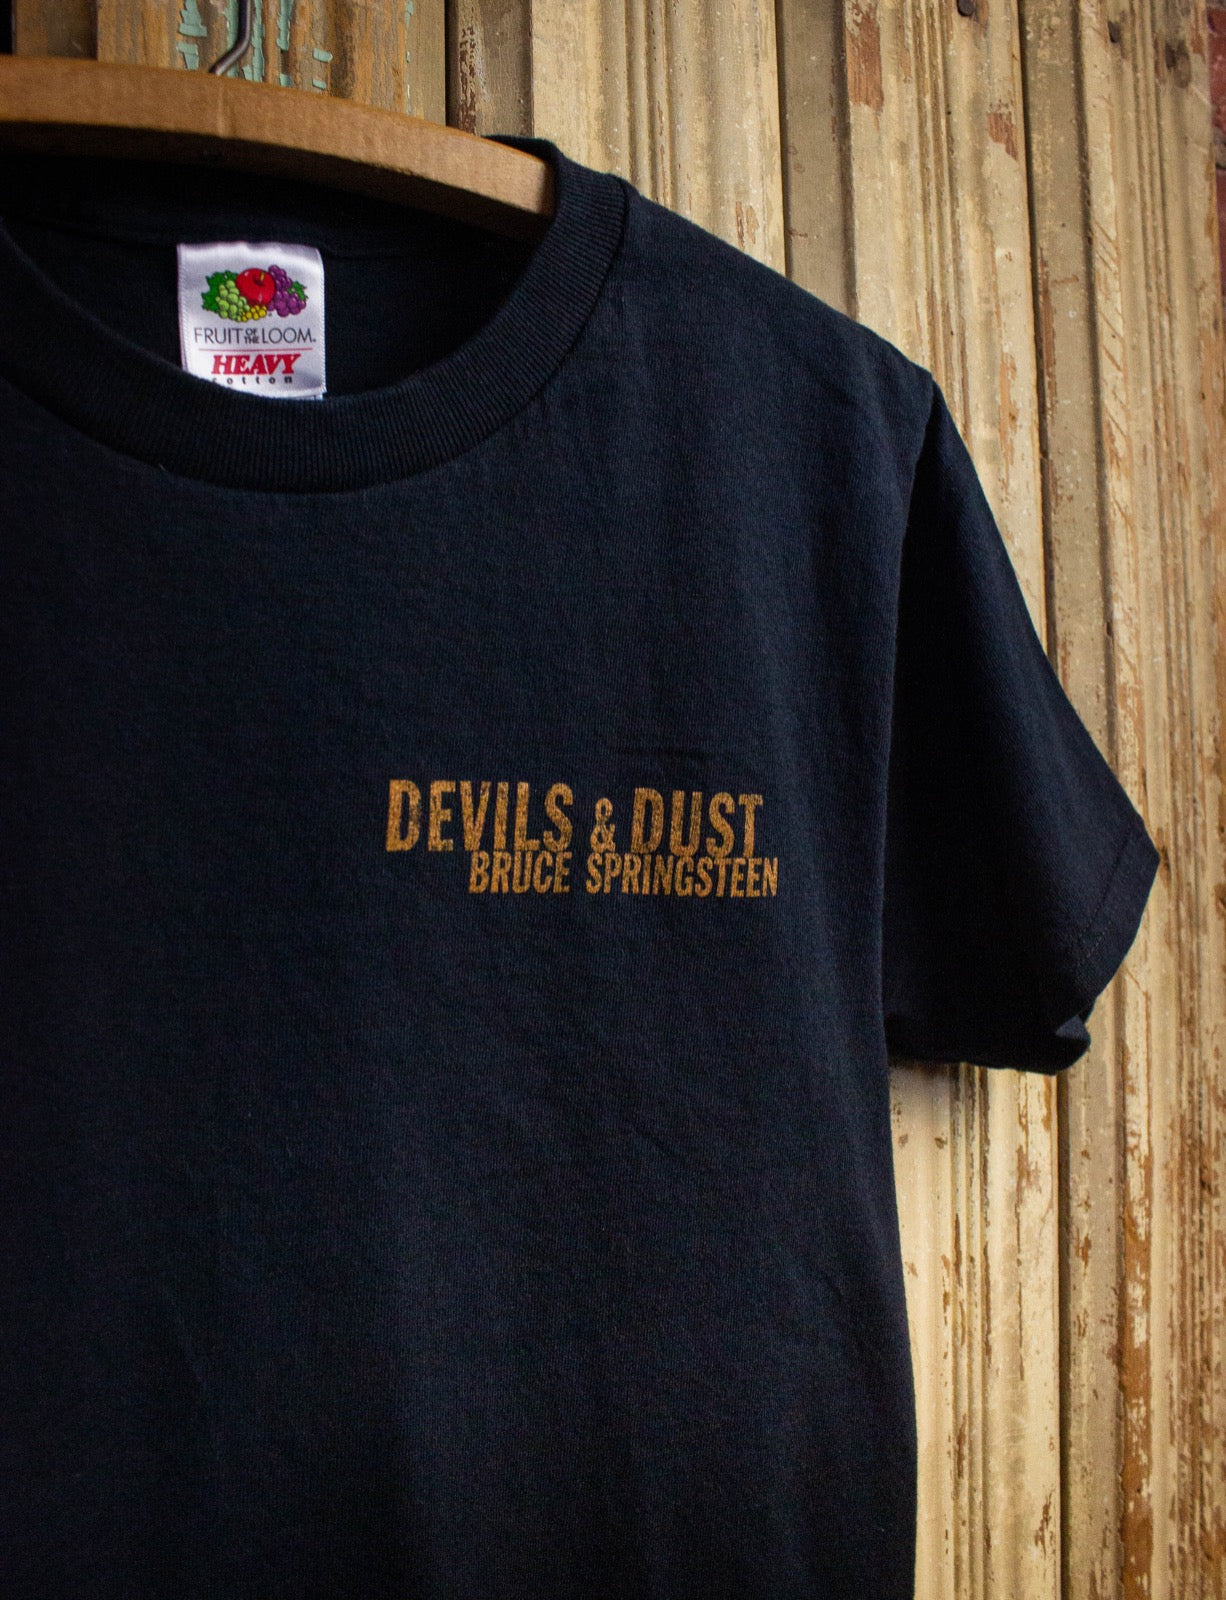 Vintage Bruce Springsteen Devils & Dust Concert T Shirt 2003 Black Small